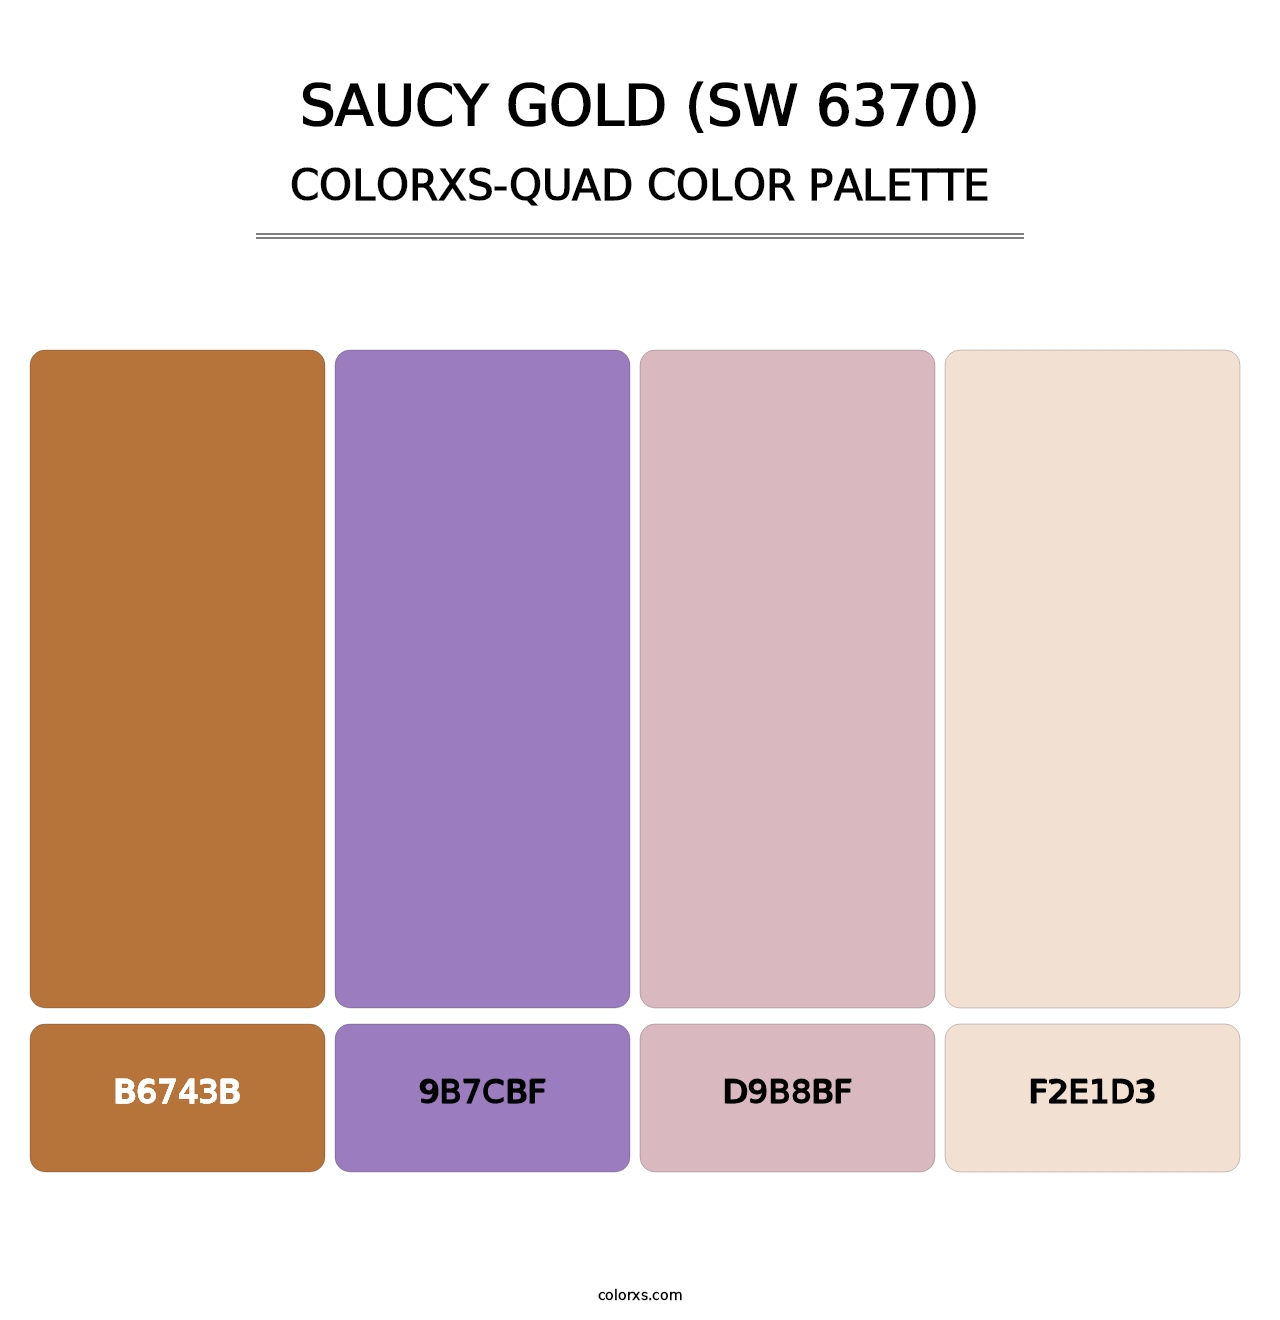 Saucy Gold (SW 6370) - Colorxs Quad Palette